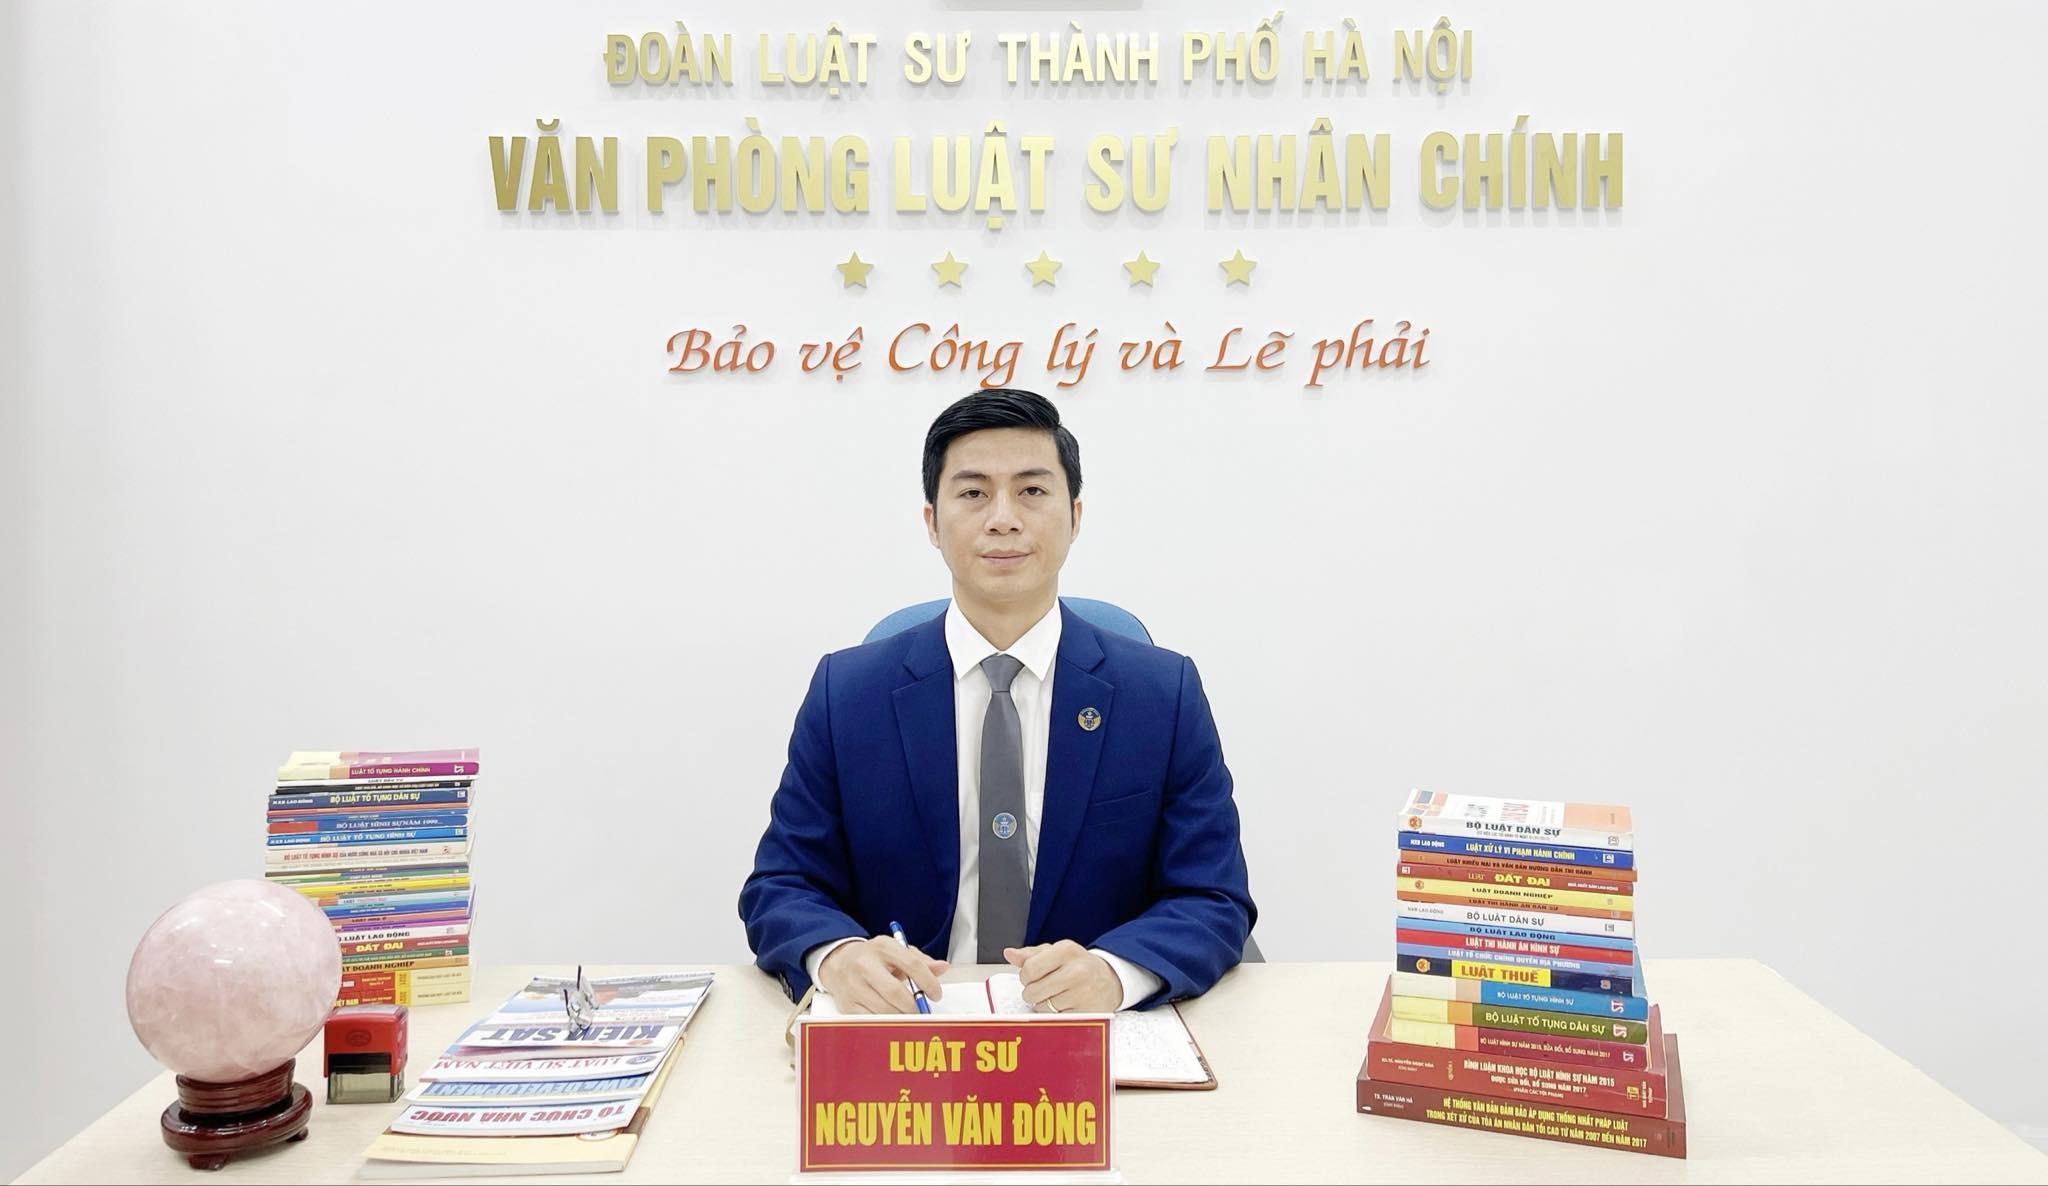 
Luật sư Nguyễn Văn Đồng, Đoàn Luật sư TP.Hà Nội
